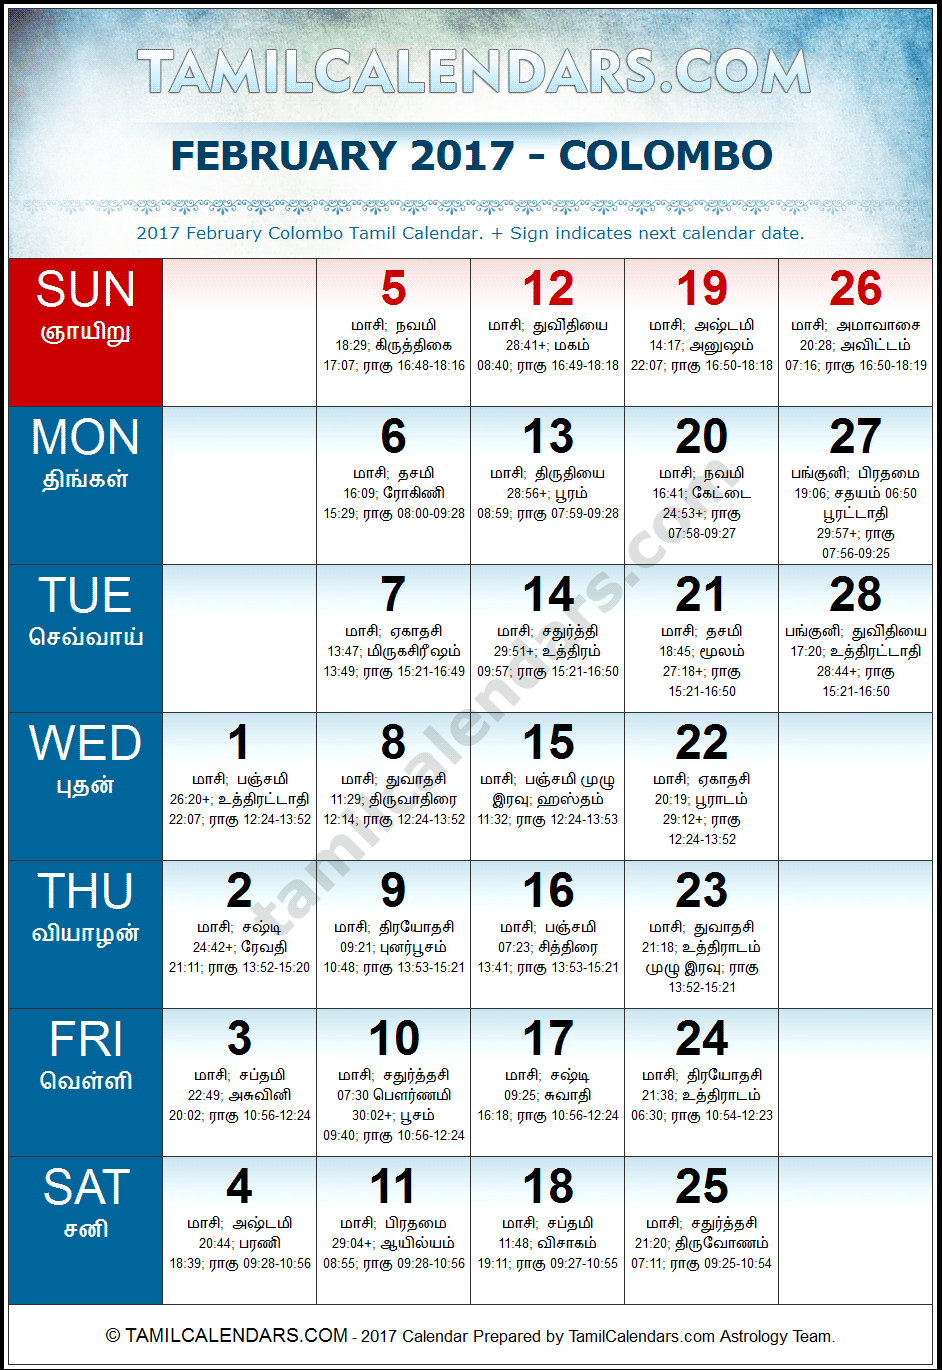 February 2017 Tamil Calendar for Sri Lanka (Colombo)